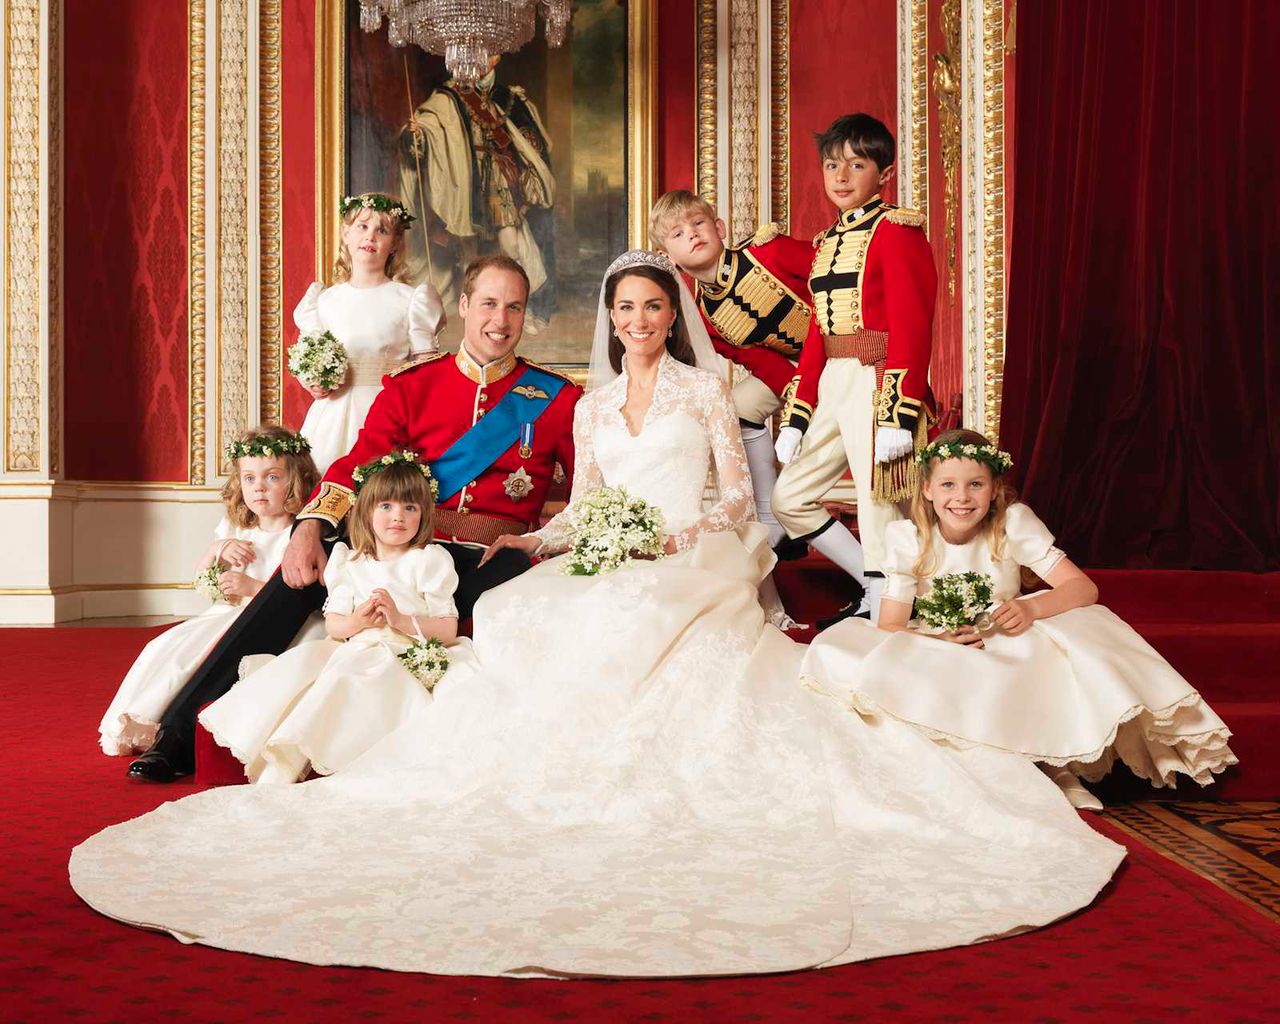 Oficjalny ślubny portret księżnej Kate i księcia Williama